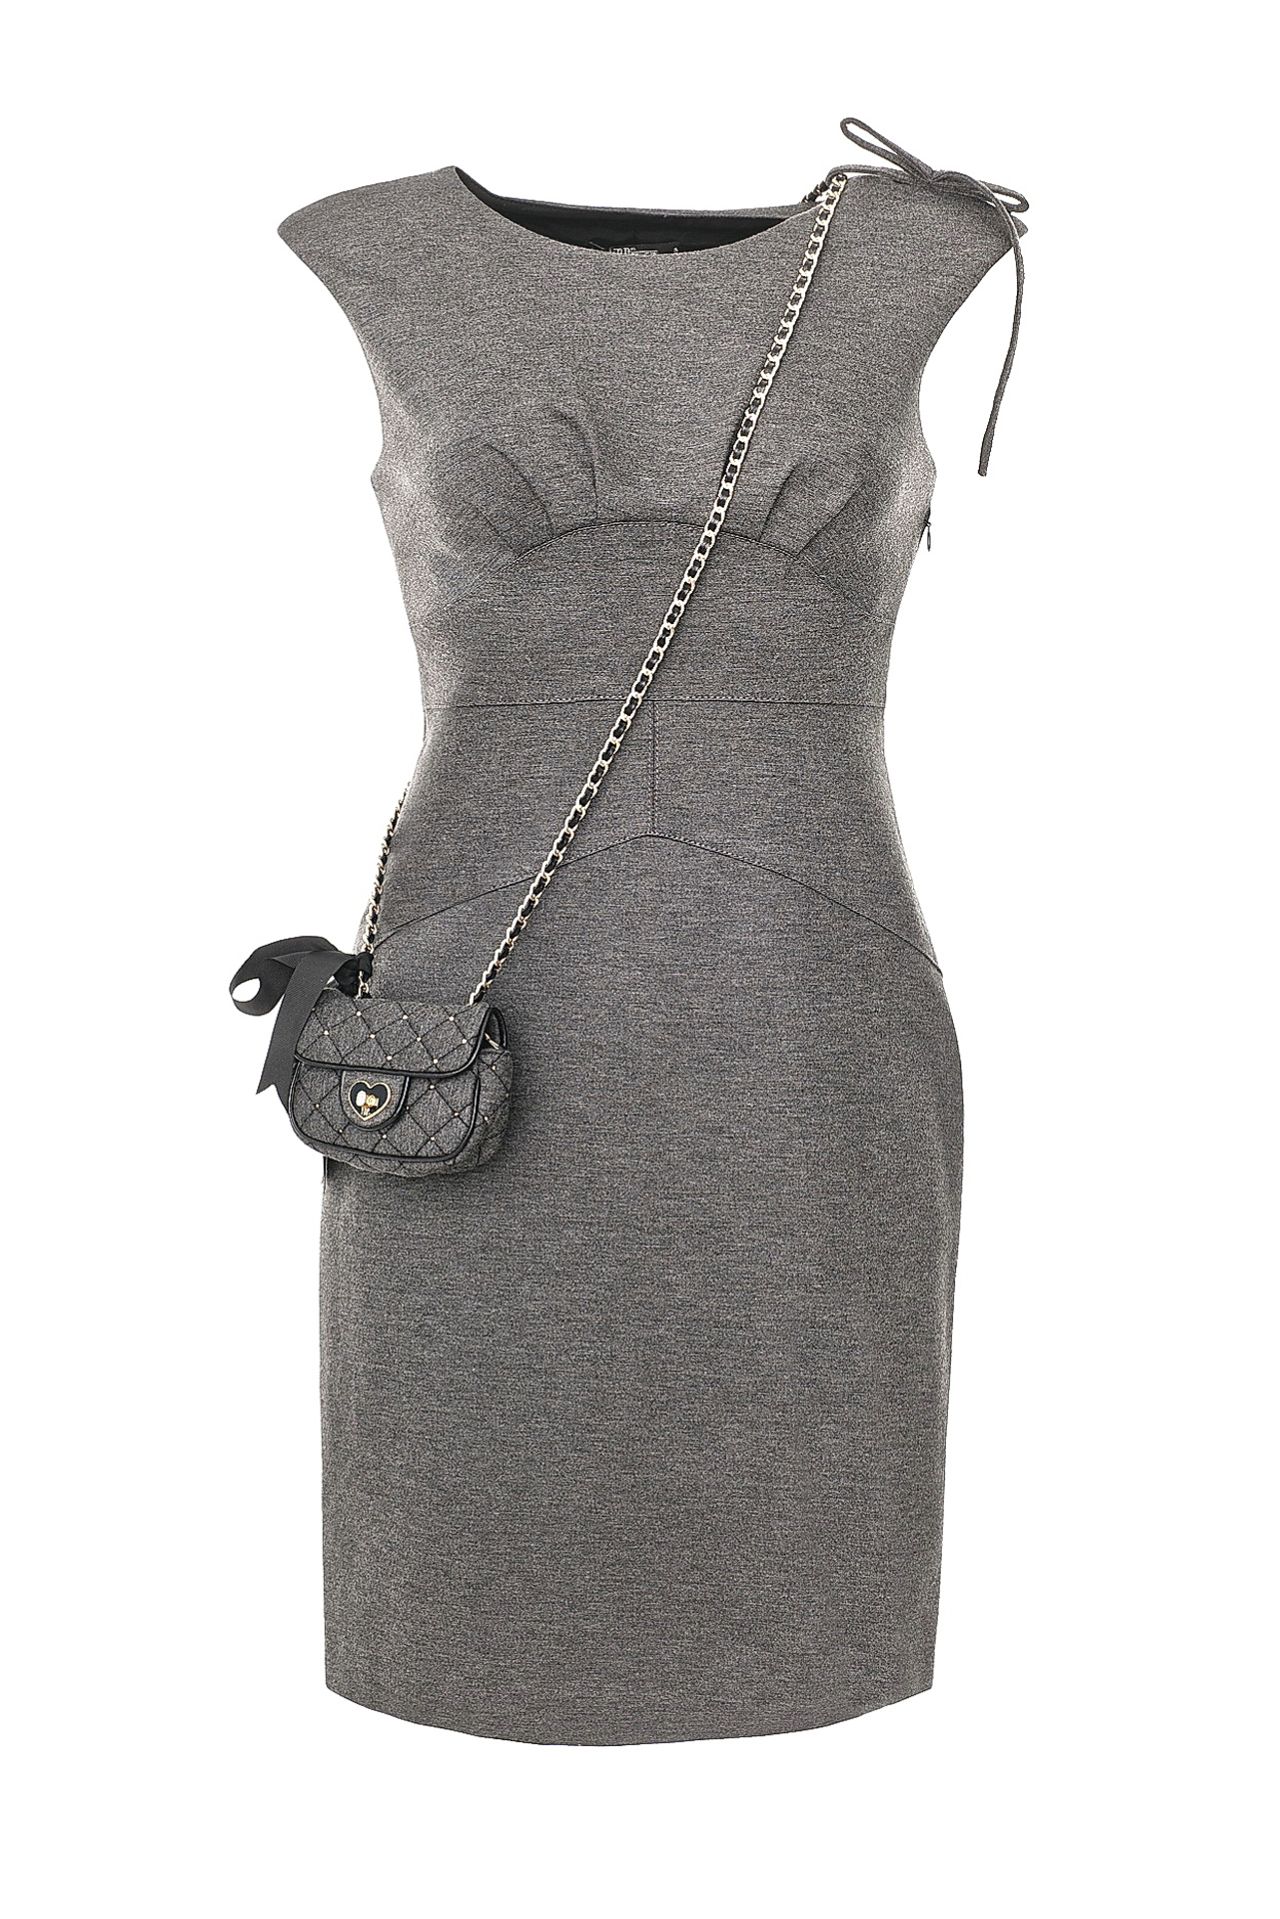 Одежда женская Платье VDP VIA DELLE PERLE (9216/11.2). Купить за 23960 руб.